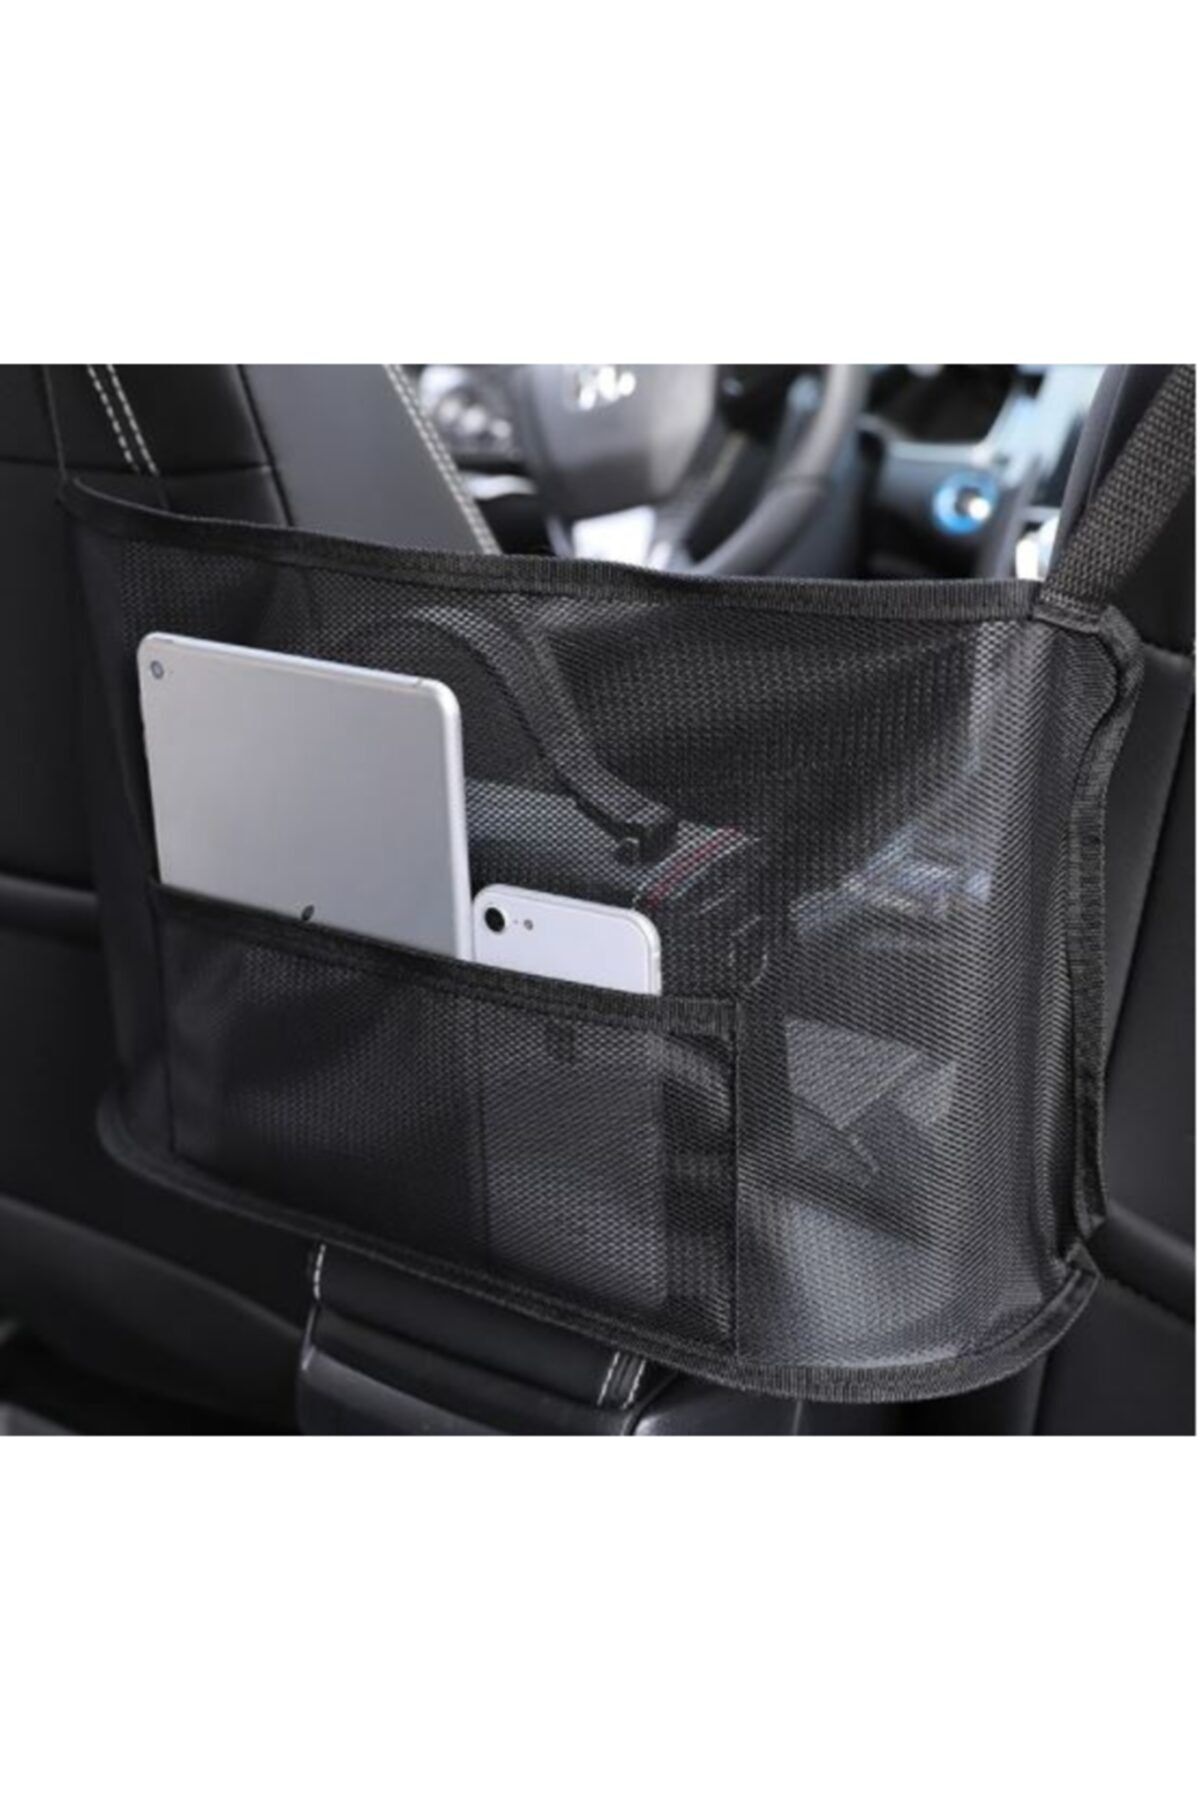 Ankaflex Highconcept Oto Koltuk Arası Çanta Araba Organizer Eşya Düzenleyici Telefon Tablet Saklama Çantası